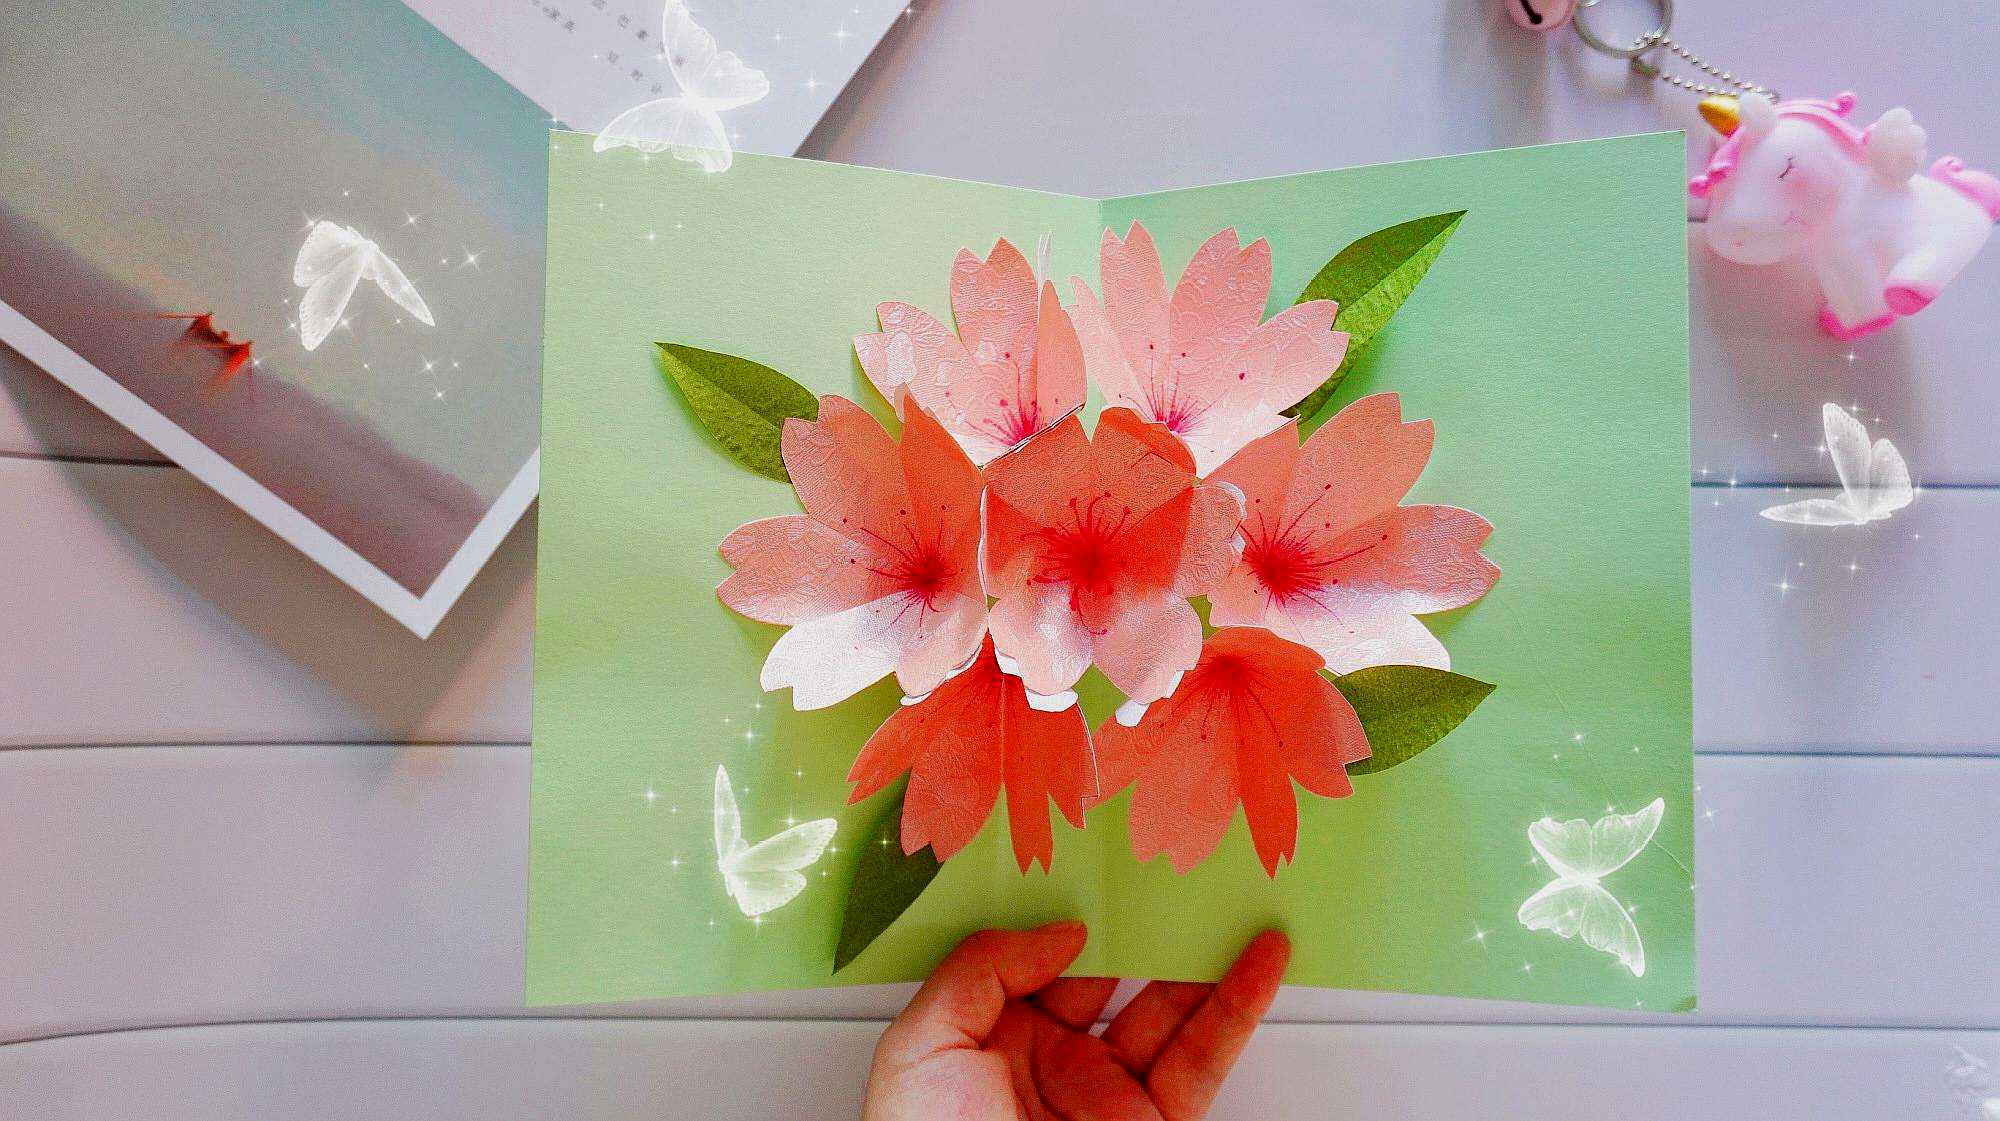 创意手工折纸贺卡,打开有漂亮的爱心花朵,简单易学有新意